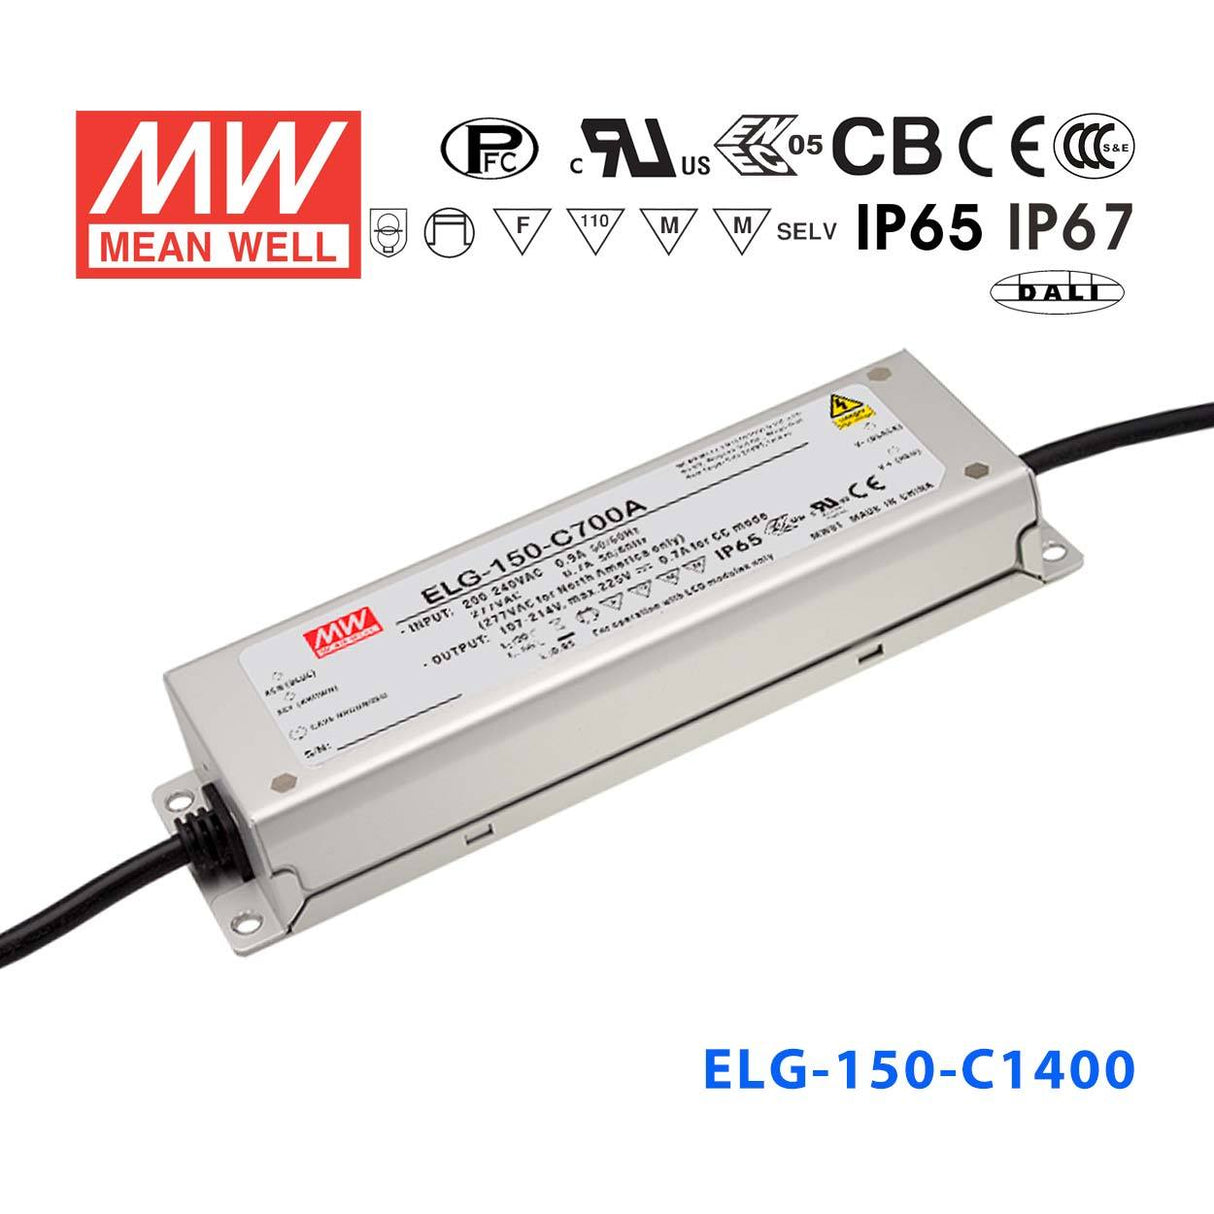 Mean Well ELG-150-C1400DA Power Supply 150W 1400mA - DALI